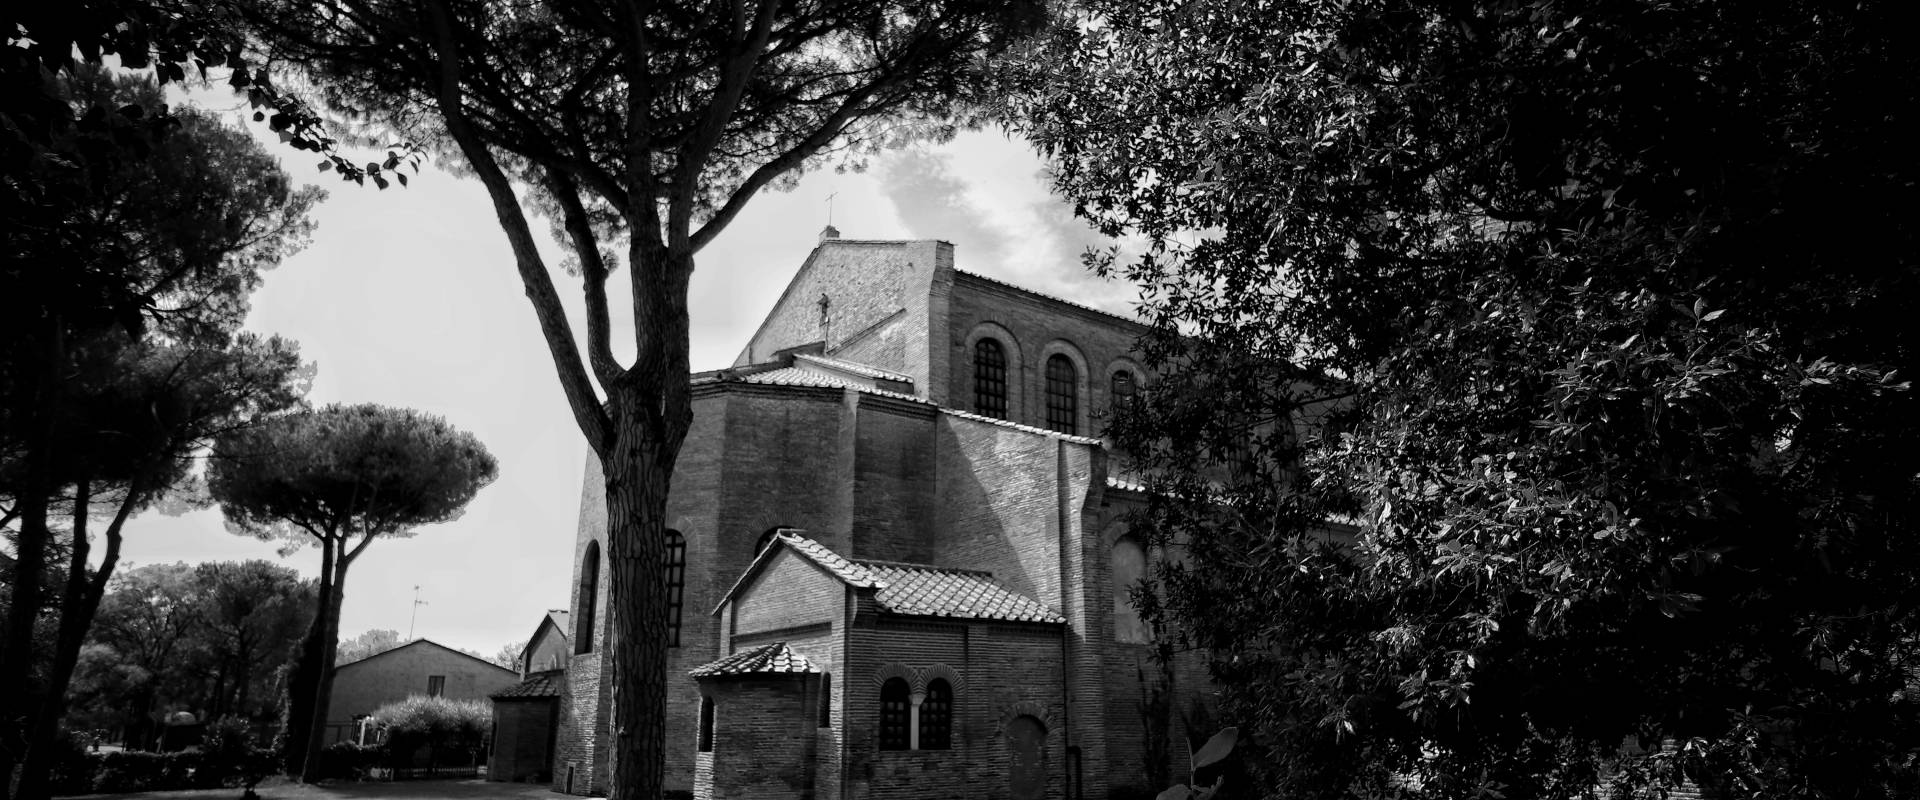 Basilica di Sant'Apollinare in Classe, Ravenna (retro black and white) foto di Stefano Casano